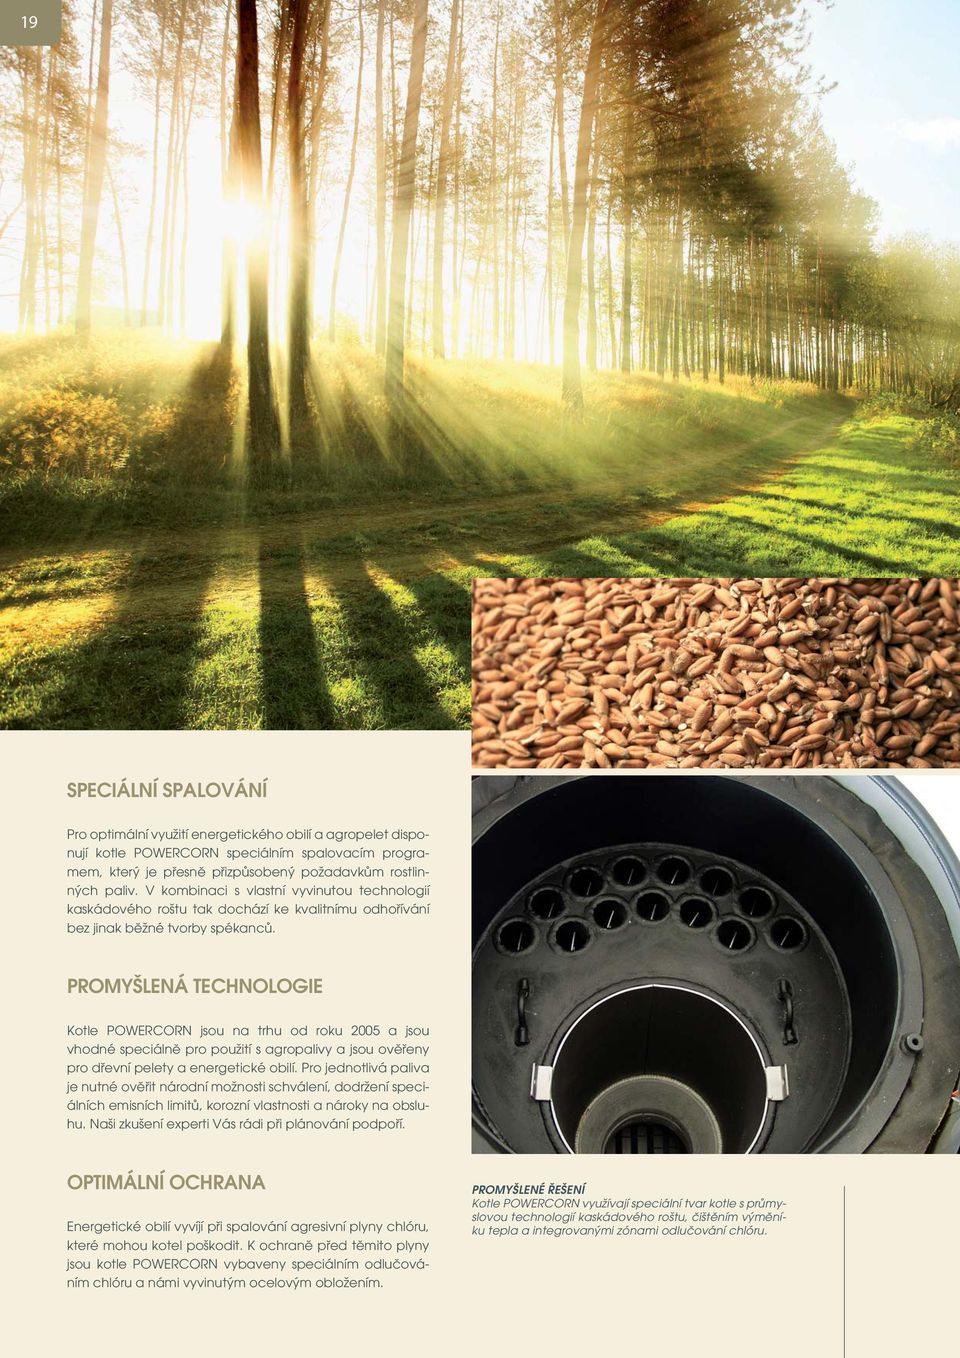 PROMYŠLENÁ TECHNOLOGIE Kotle POWERCORN jsou na trhu od roku 2005 a jsou vhodné speciálně pro použití s agropalivy a jsou ověřeny pro dřevní pelety a energetické obilí.